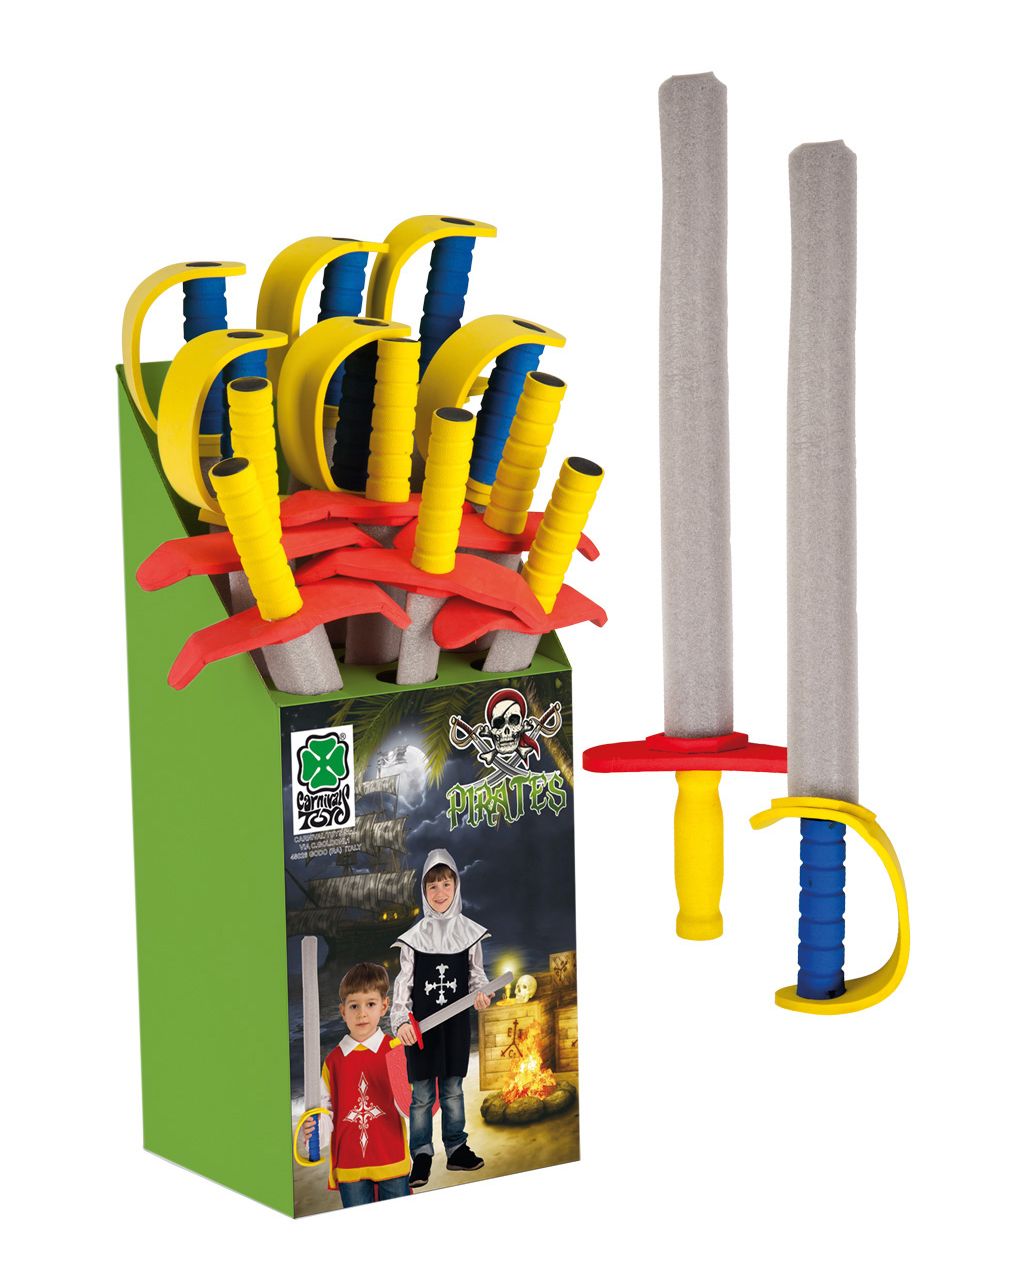 Spada in ev cm.64 modelli assortiti (dai 3 anni) - Carnival Toys